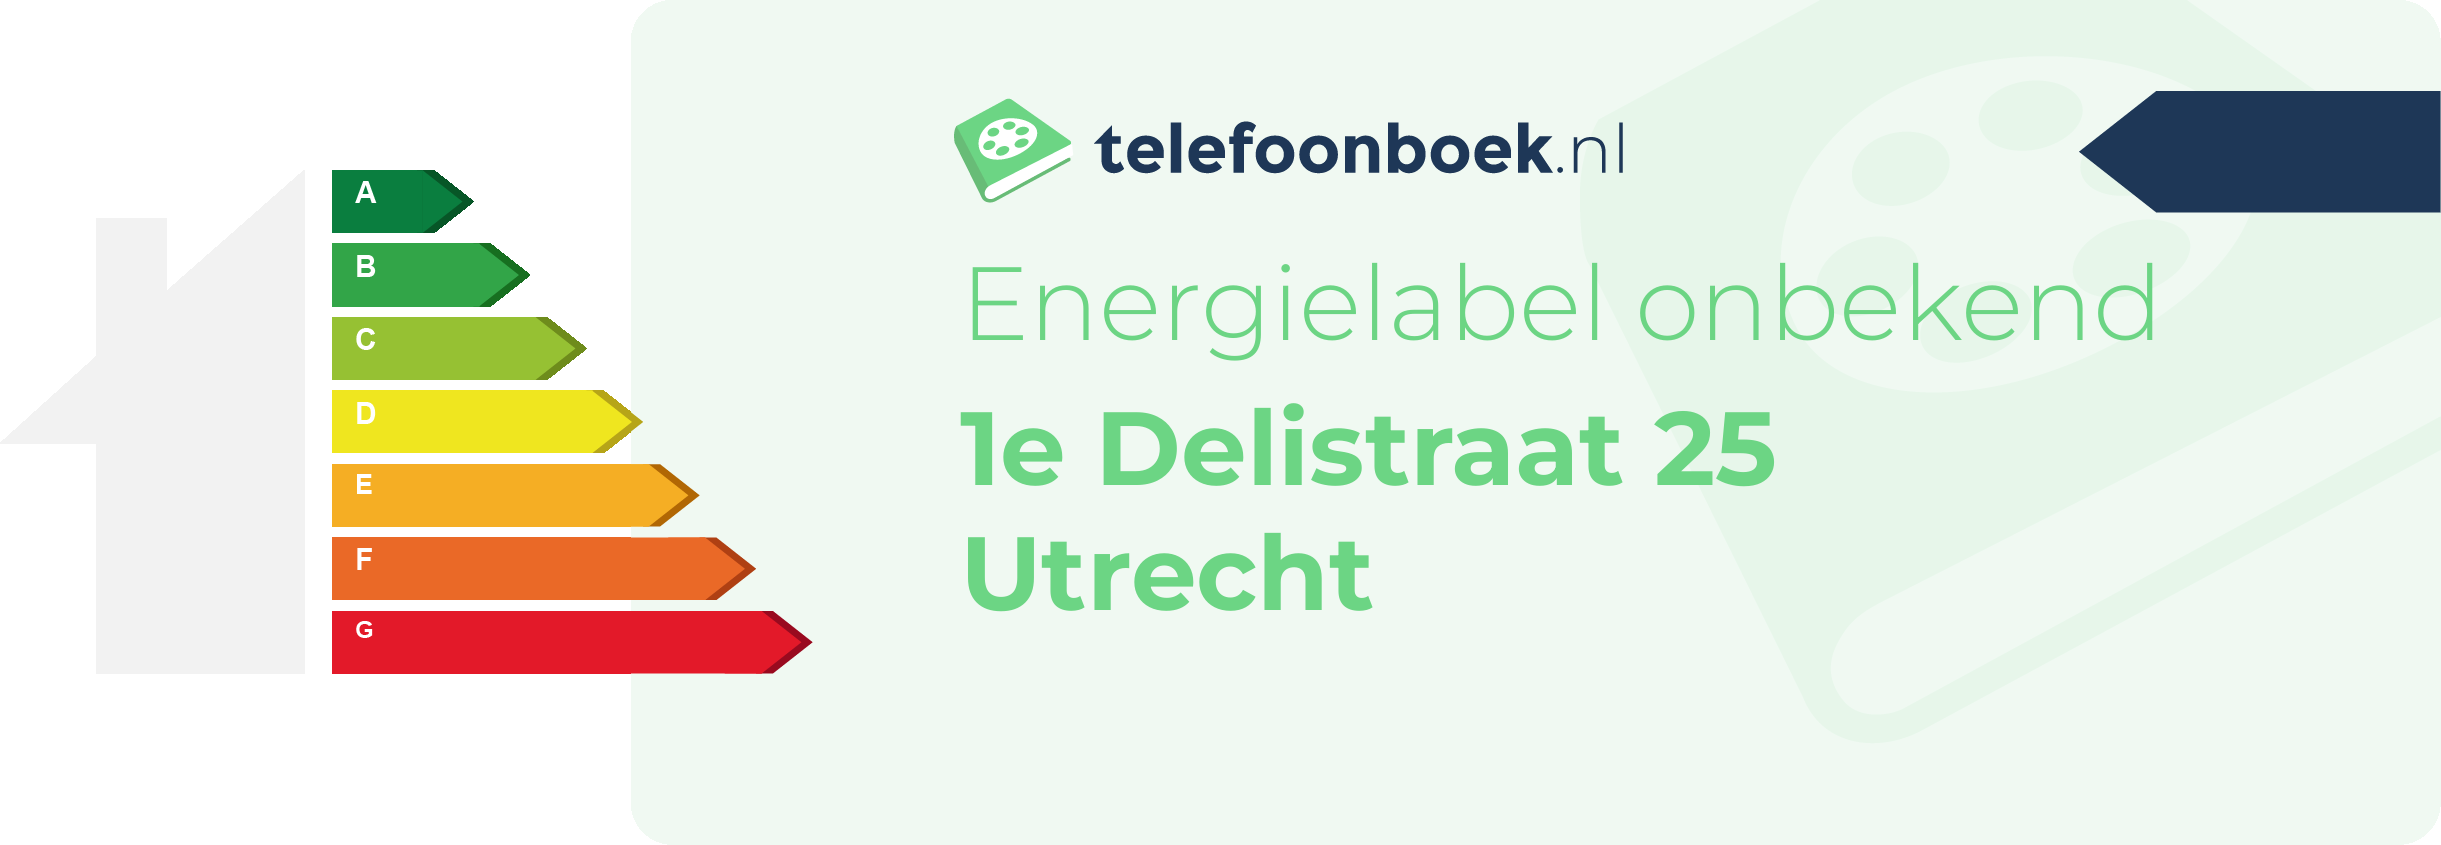 Energielabel 1e Delistraat 25 Utrecht